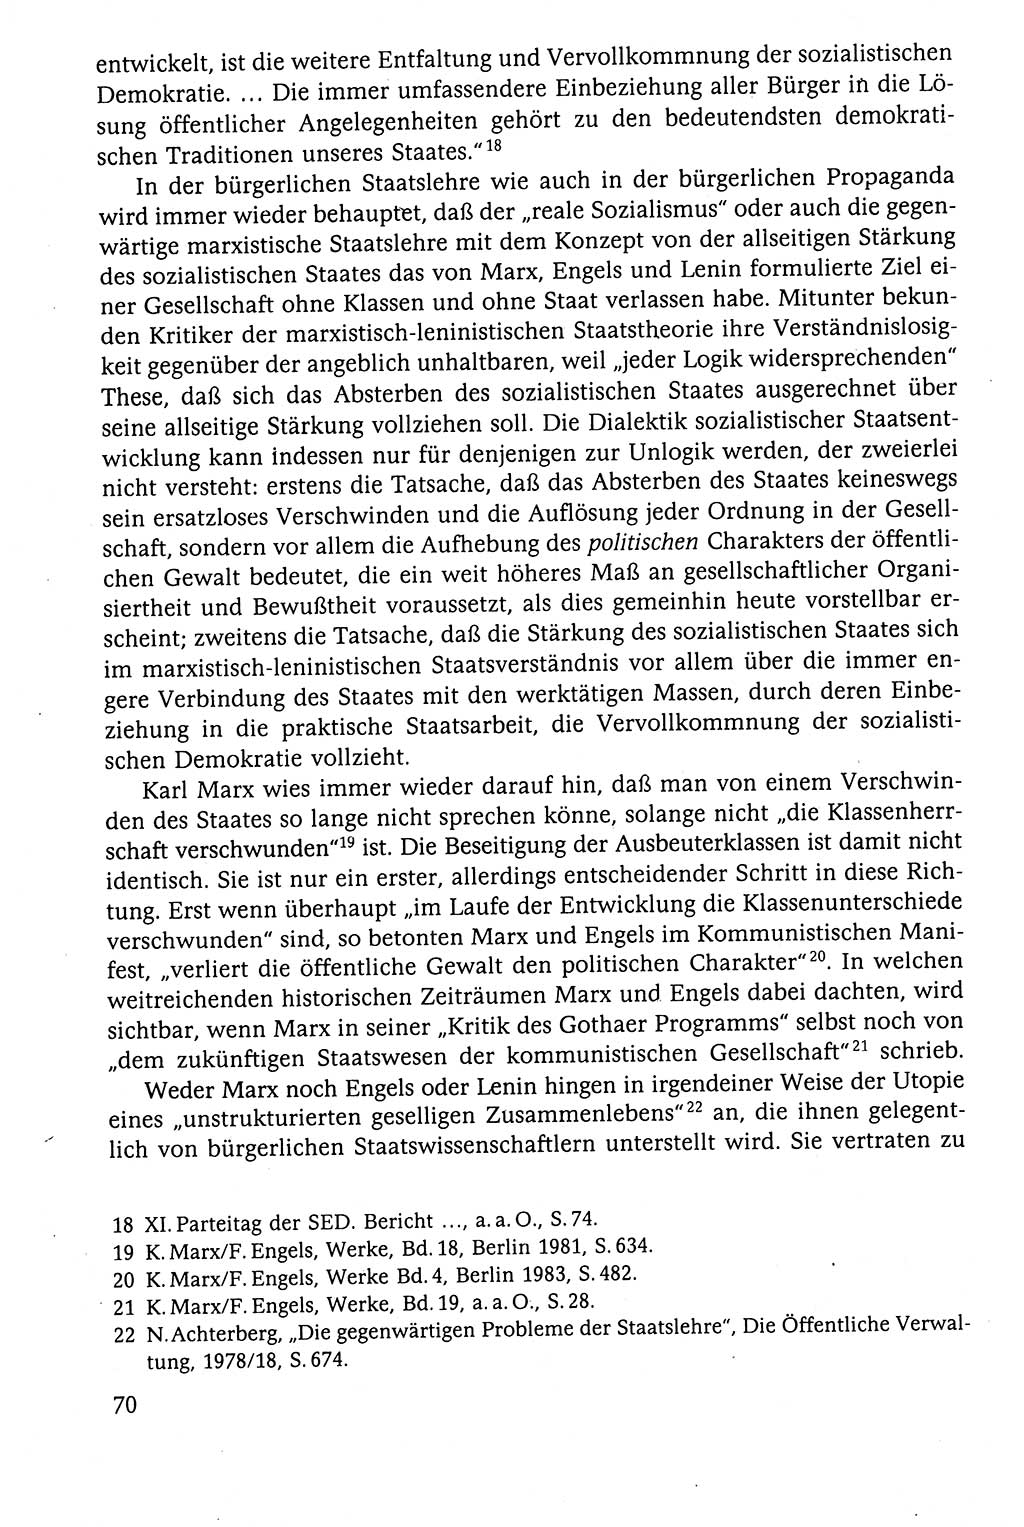 Der Staat im politischen System der DDR (Deutsche Demokratische Republik) 1986, Seite 70 (St. pol. Sys. DDR 1986, S. 70)